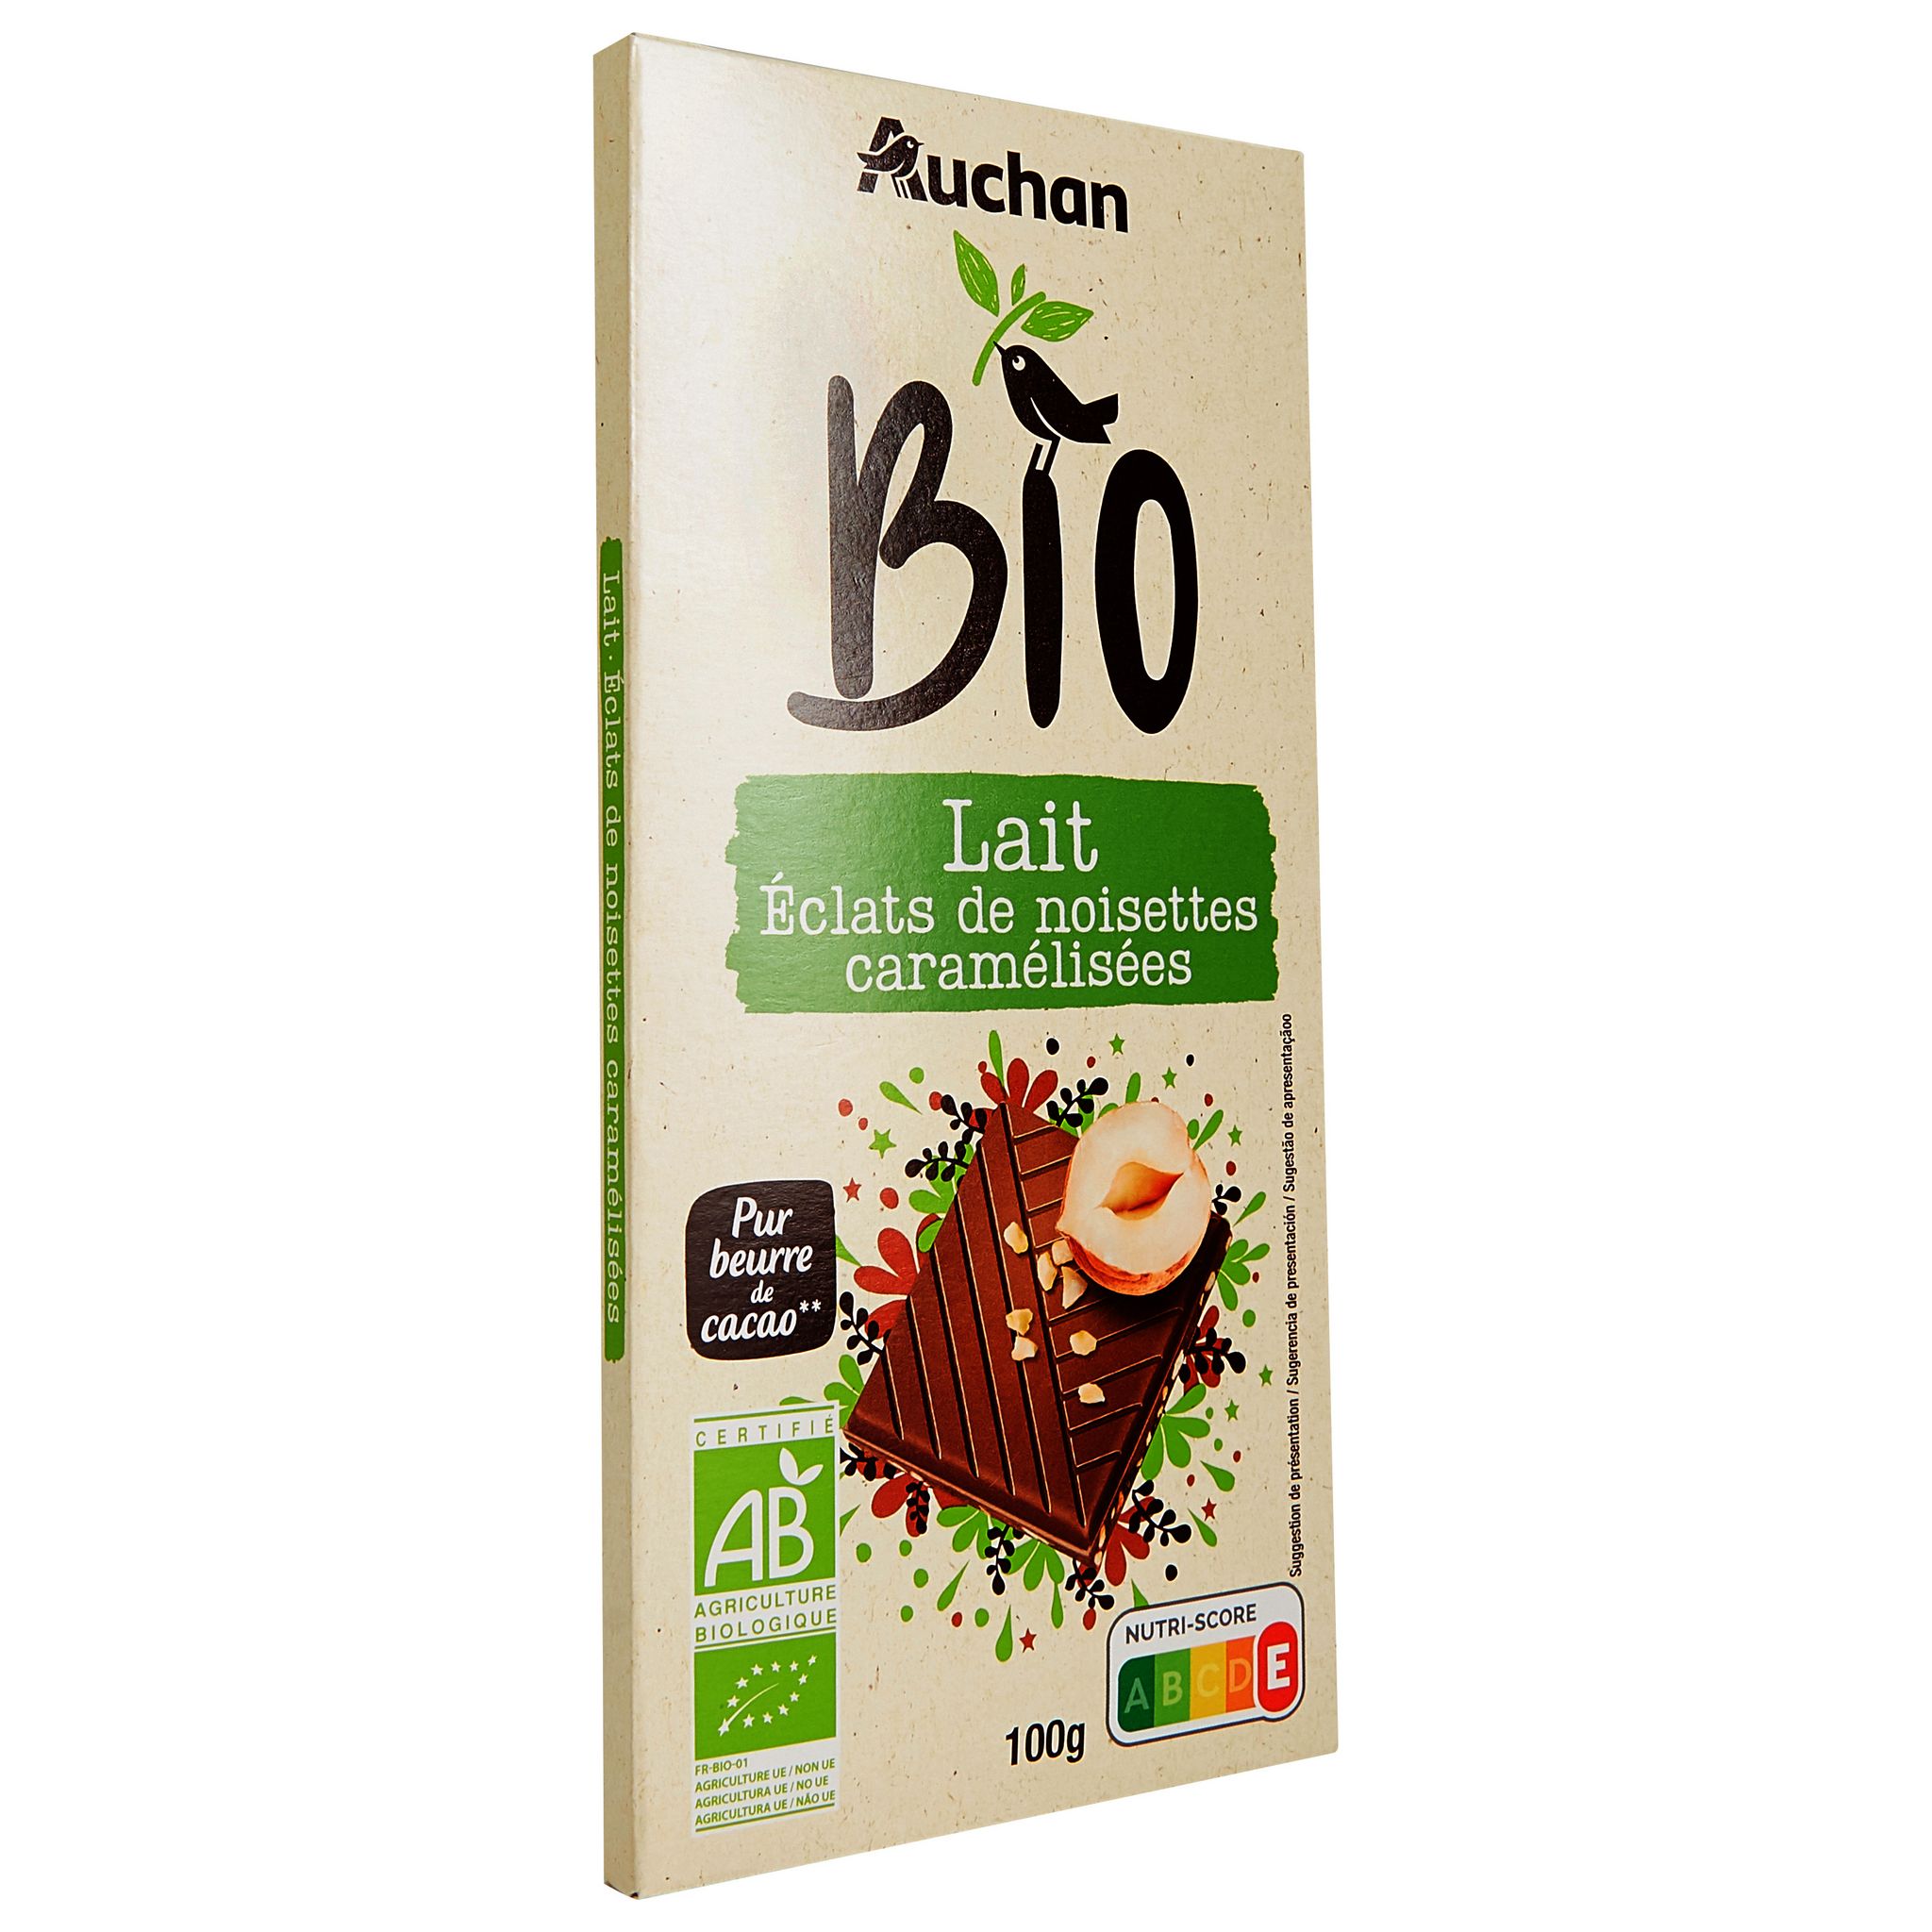 AUCHAN CULTIVONS LE BON Tablette de chocolat au lait pâtissier 1 pièce 170g  pas cher 